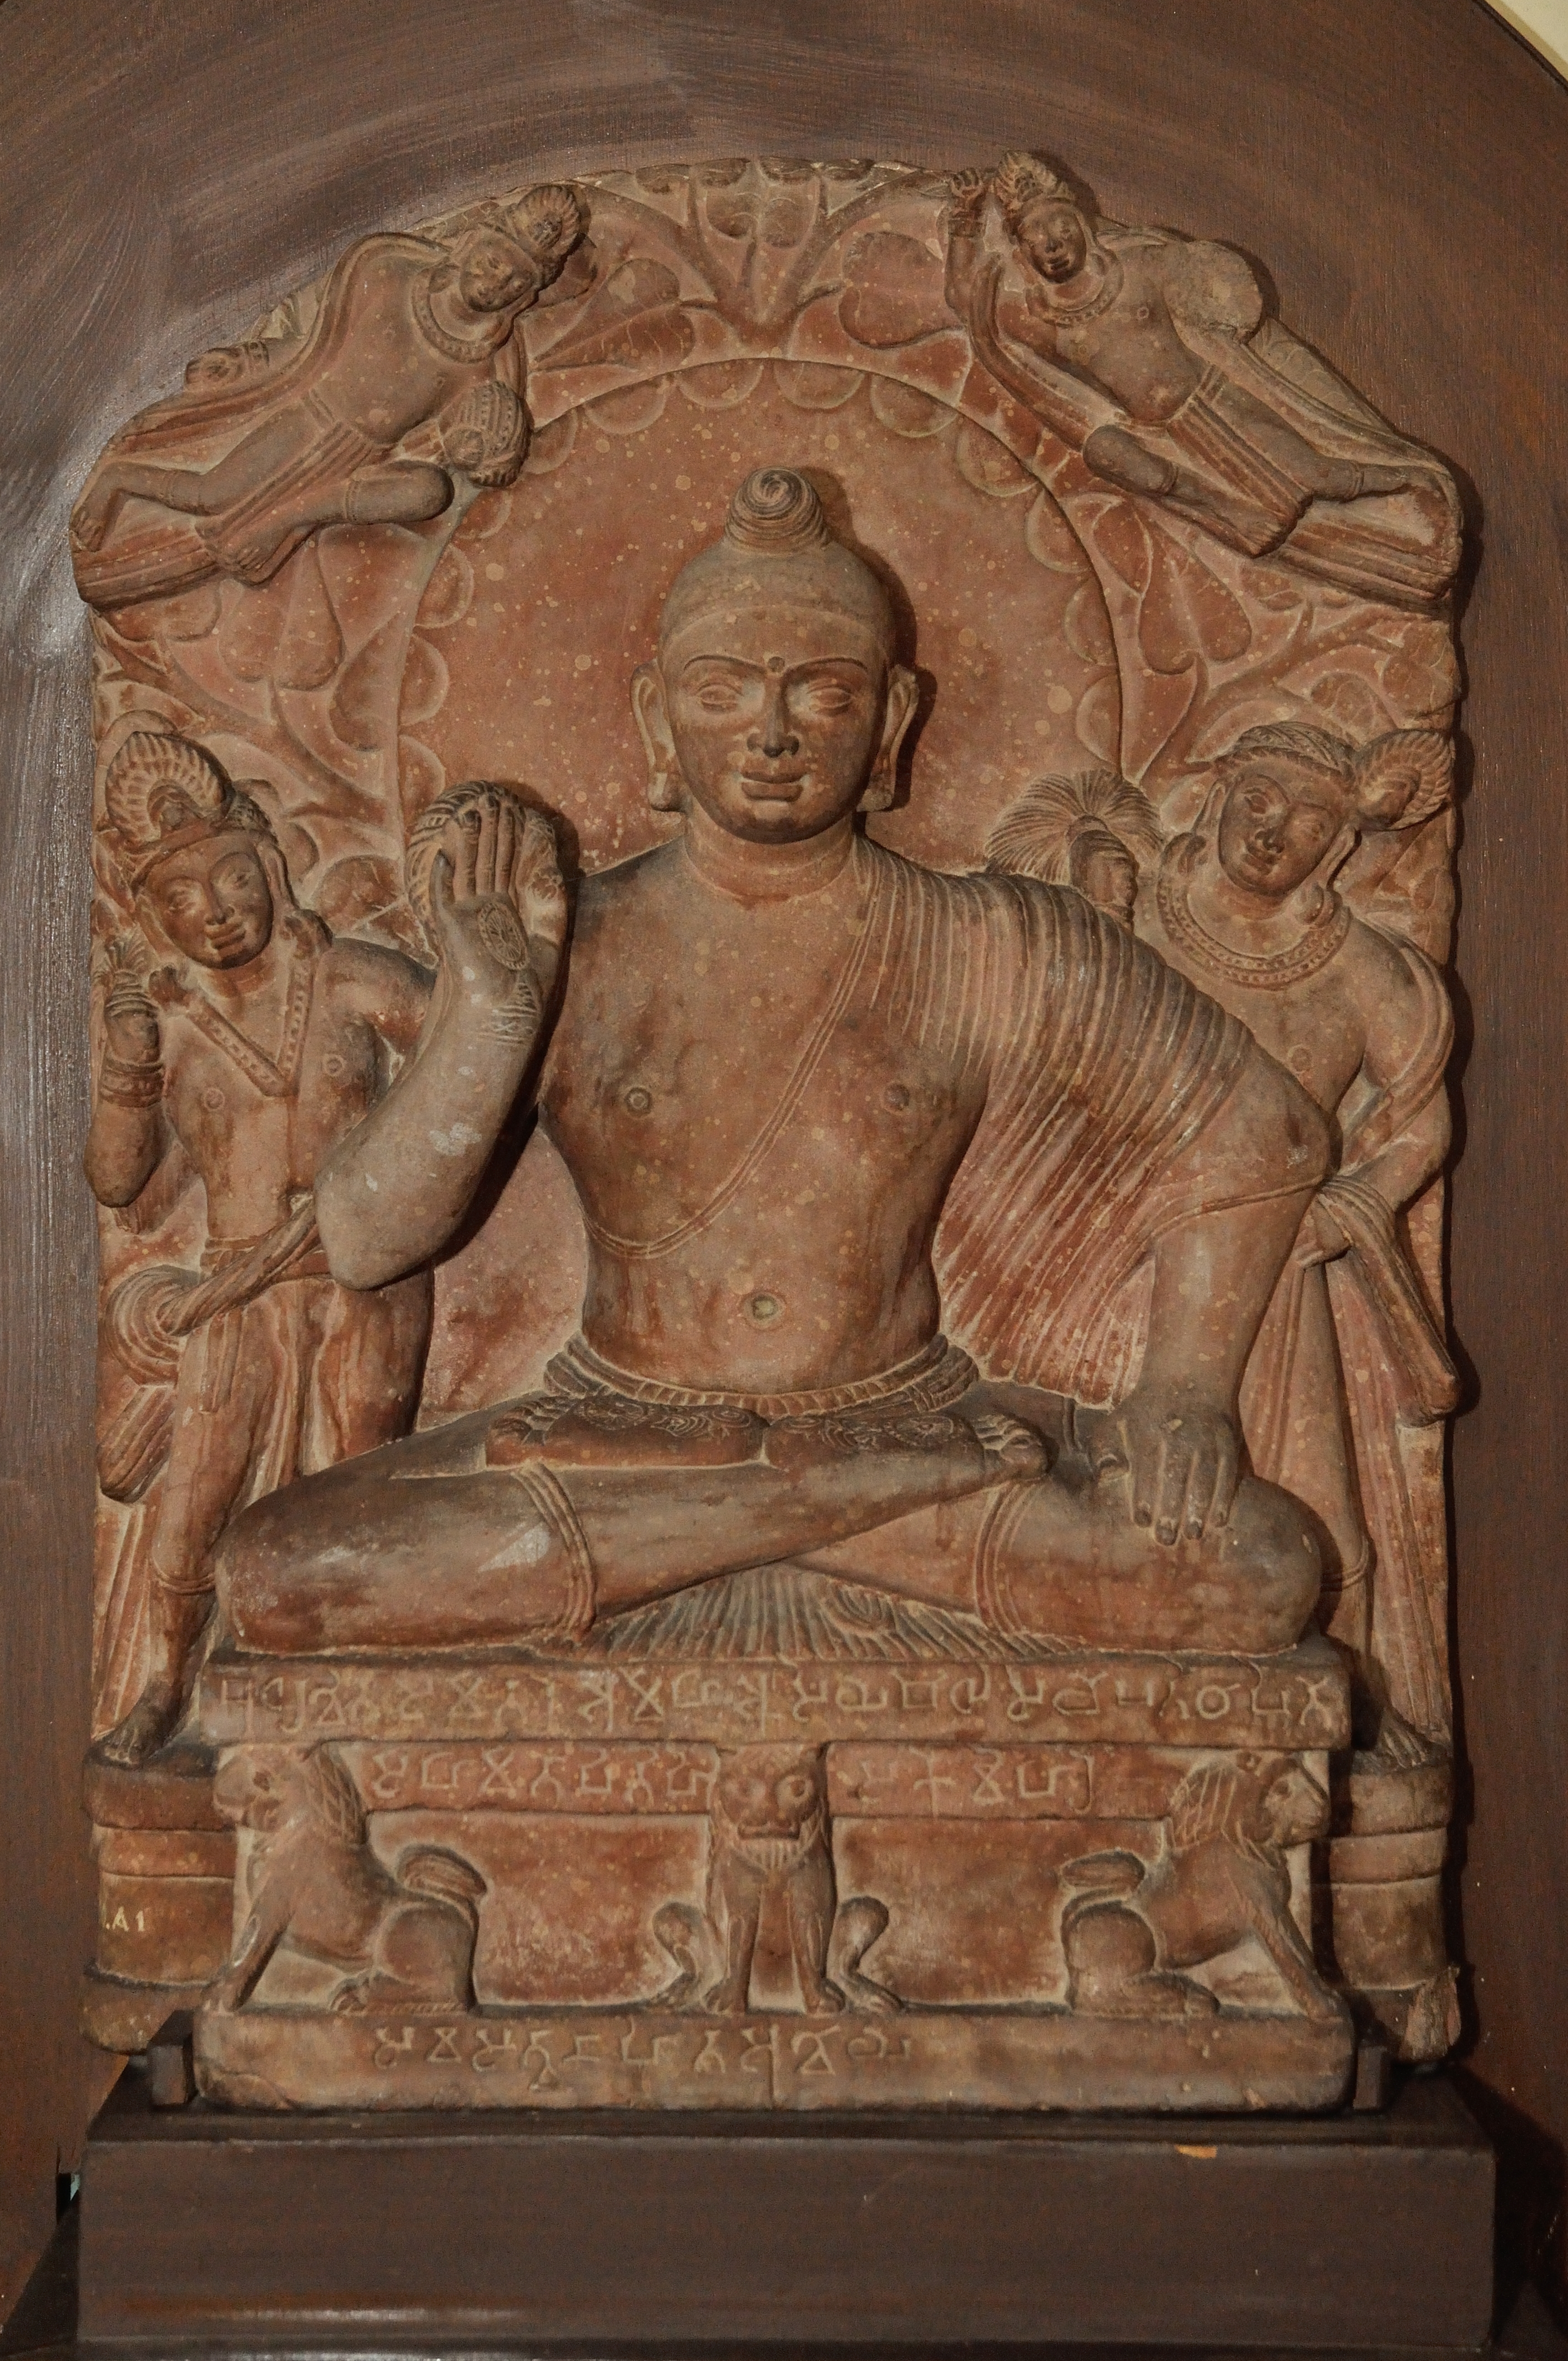 File:Buddha anjali mudra.JPG - Wikimedia Commons